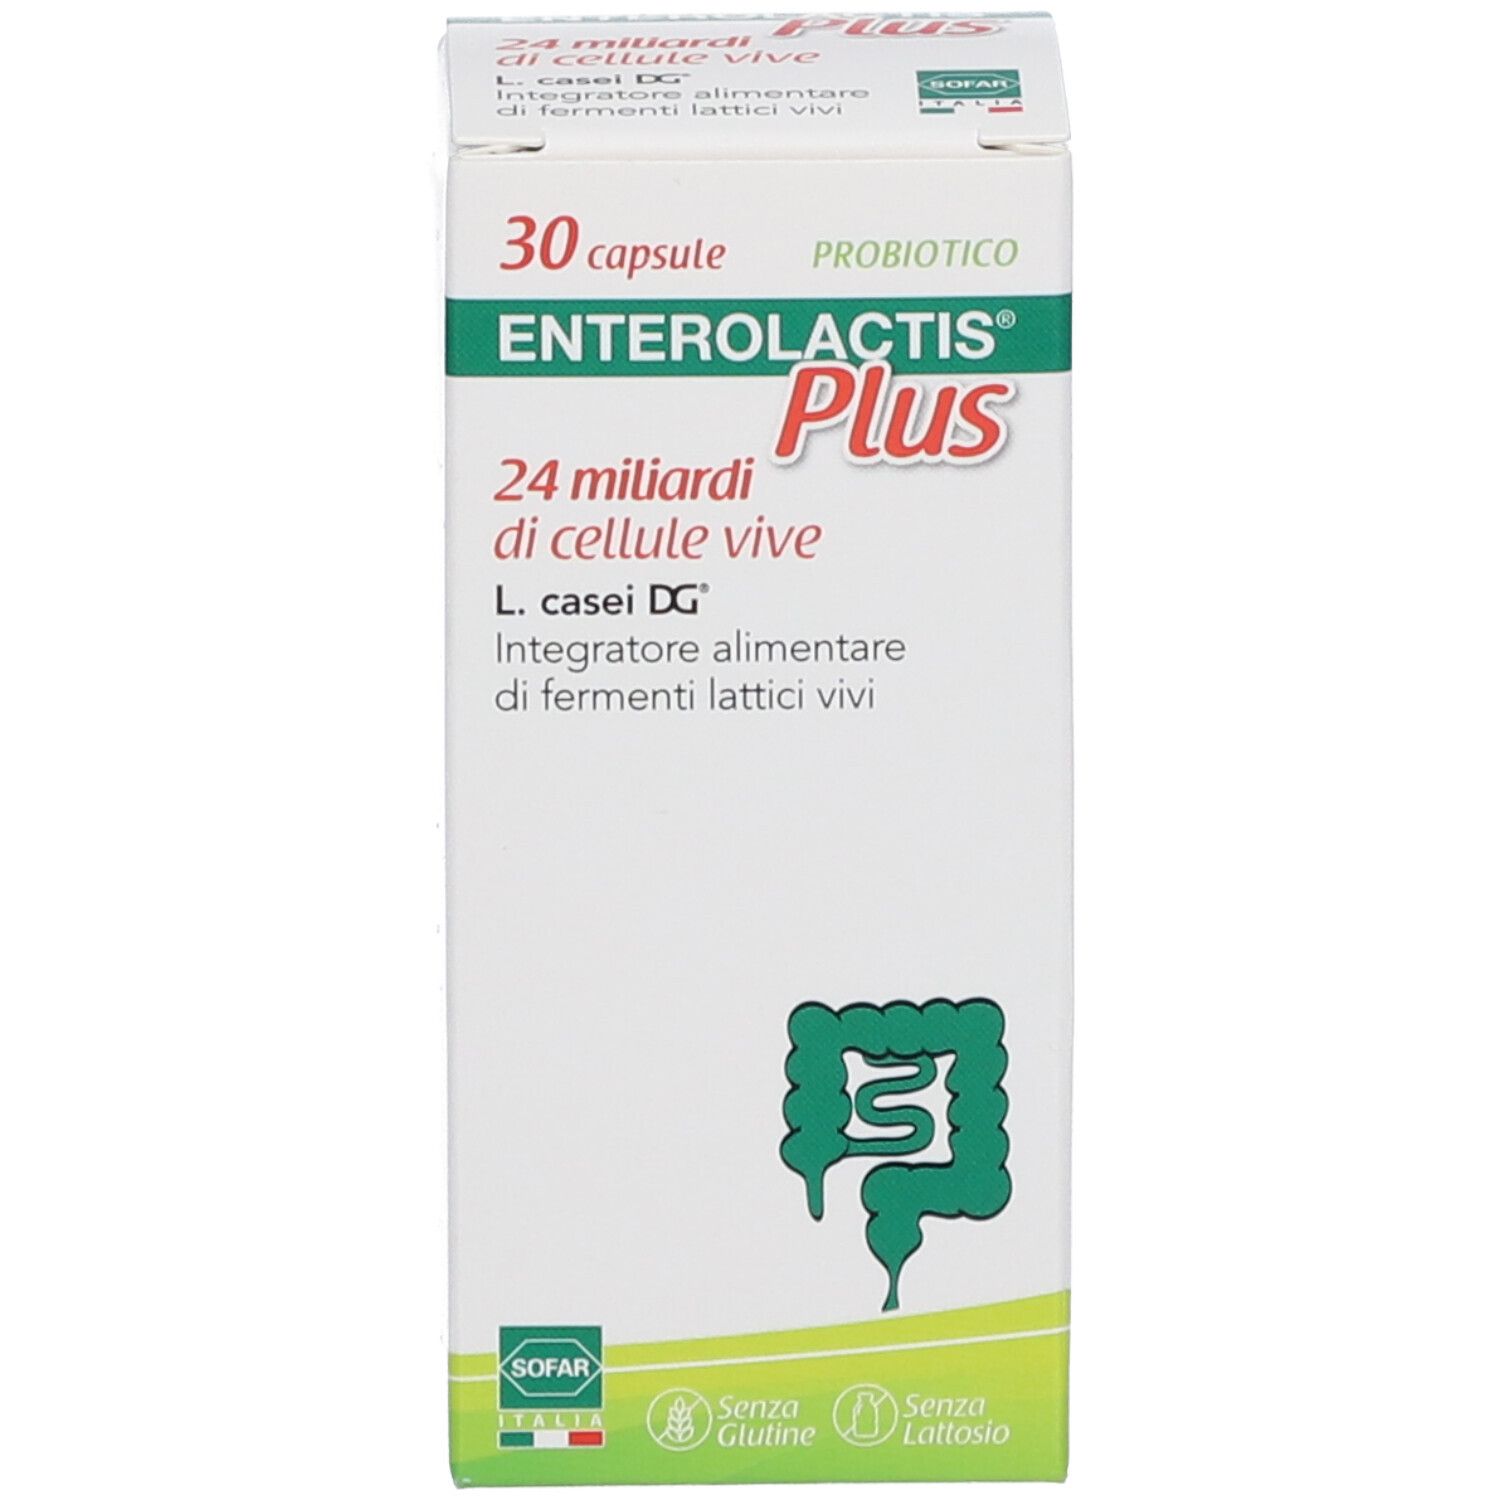 Enterolactis® Plus